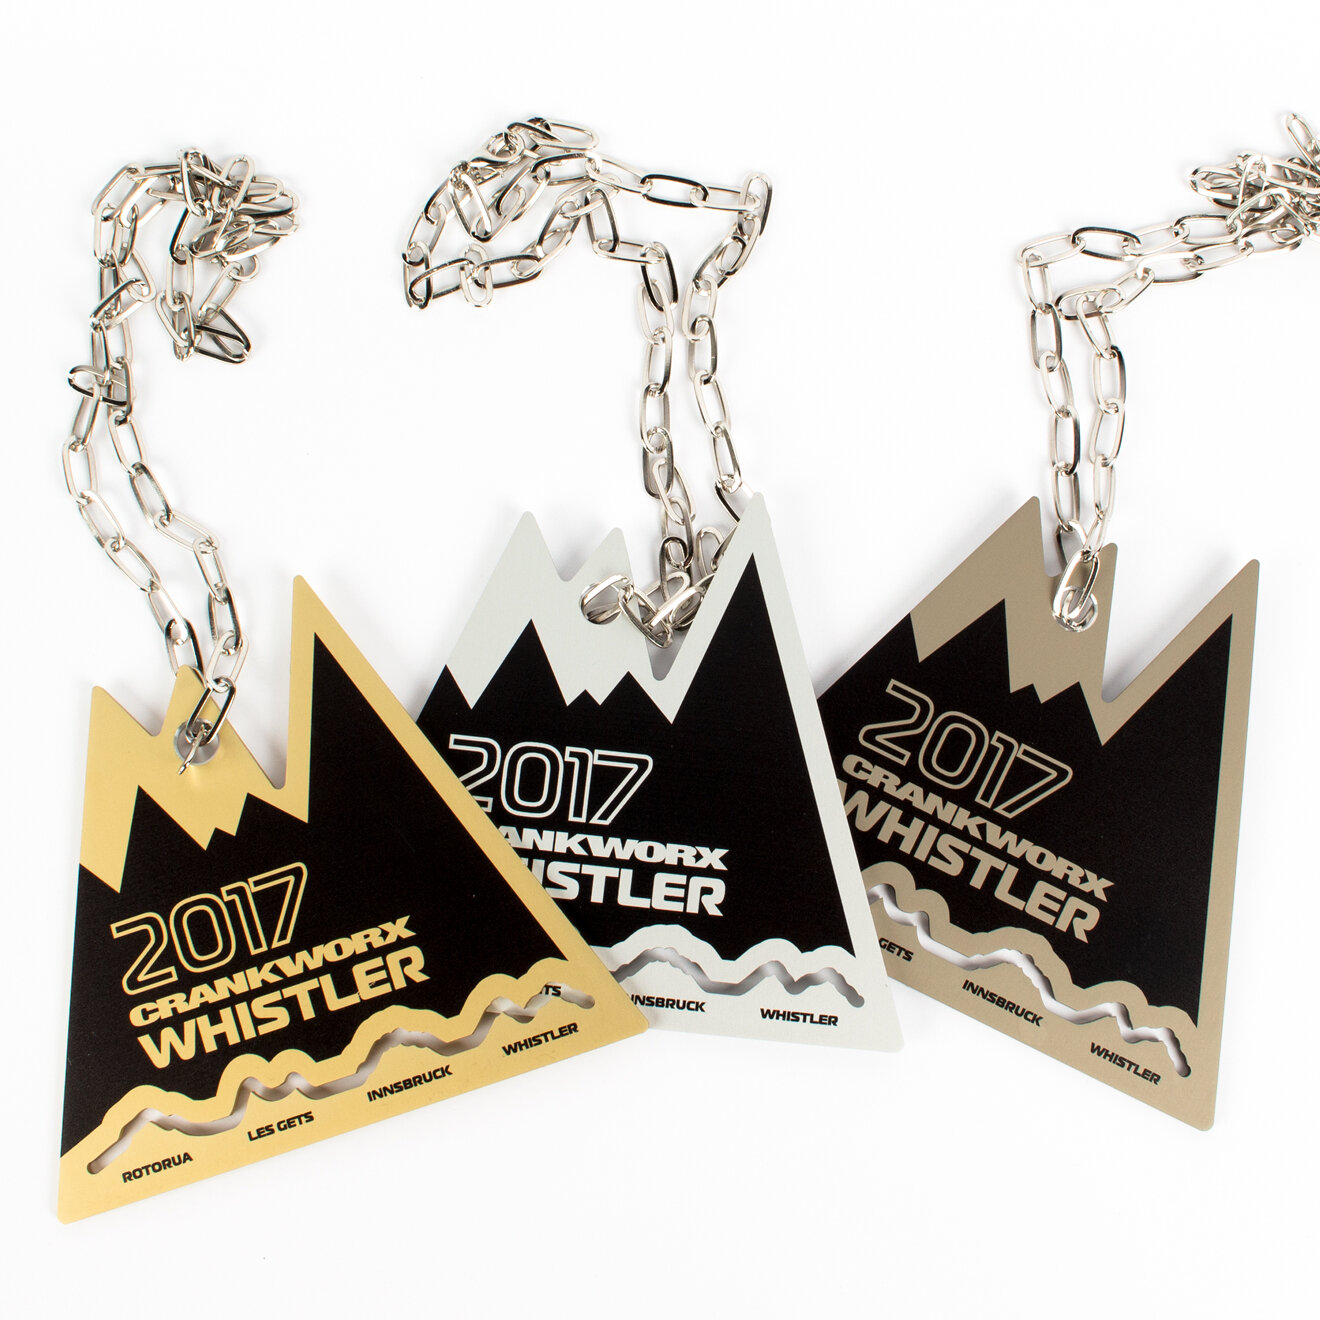 whistler crankworx 2017 custom medals